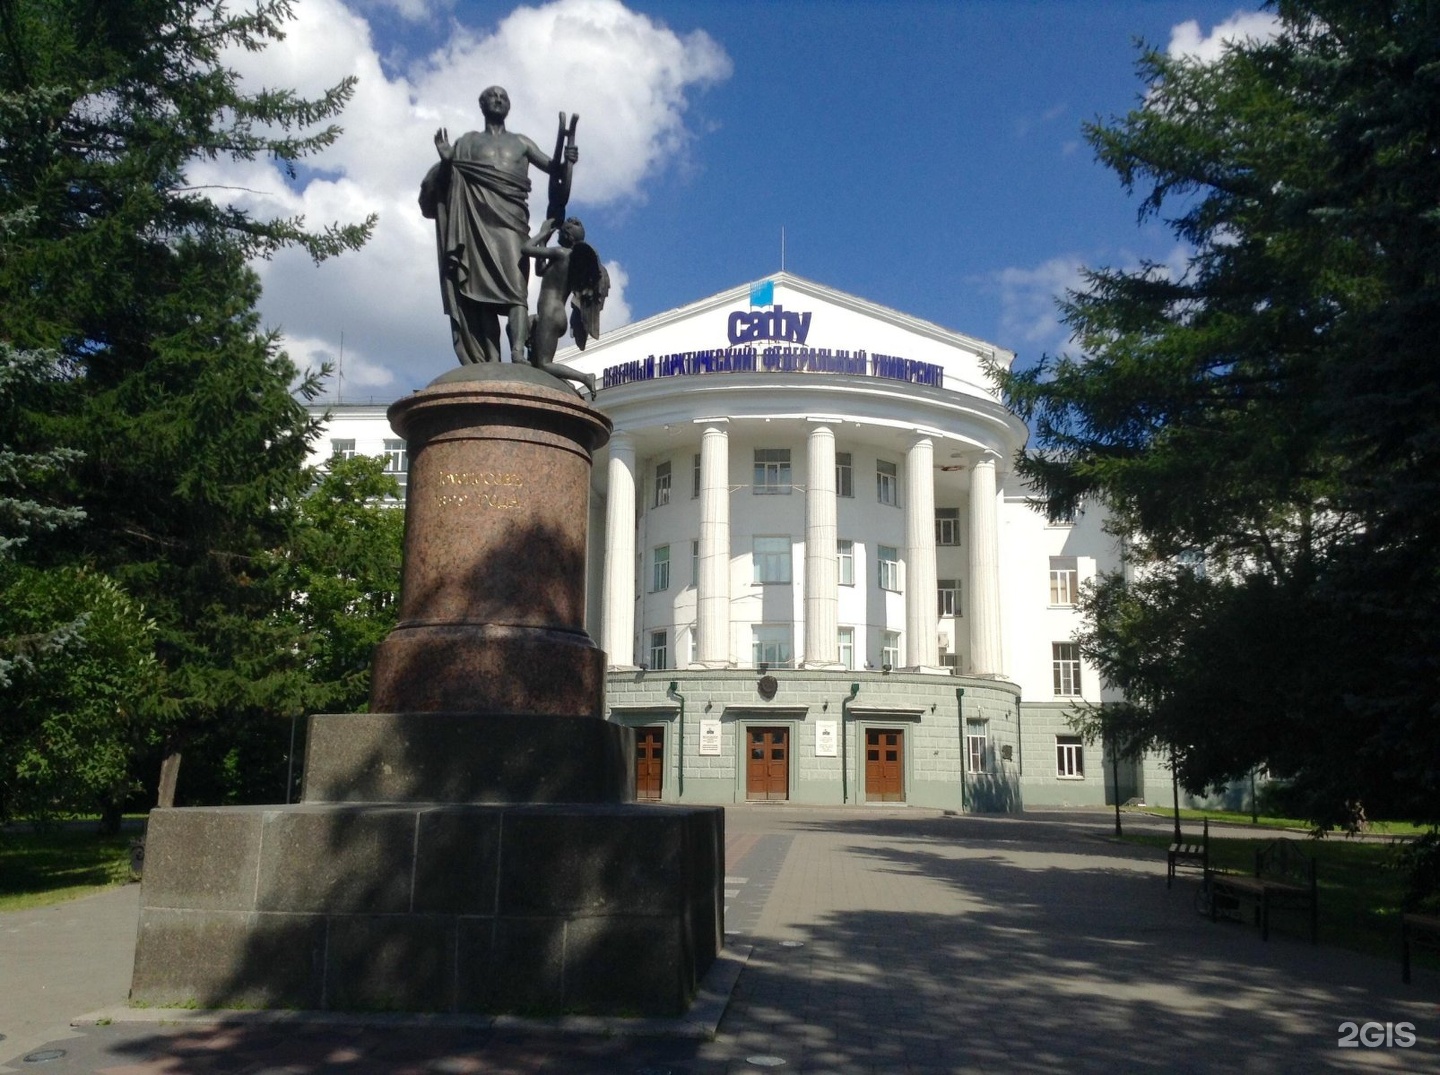 Памятник ломоносову в архангельске фото